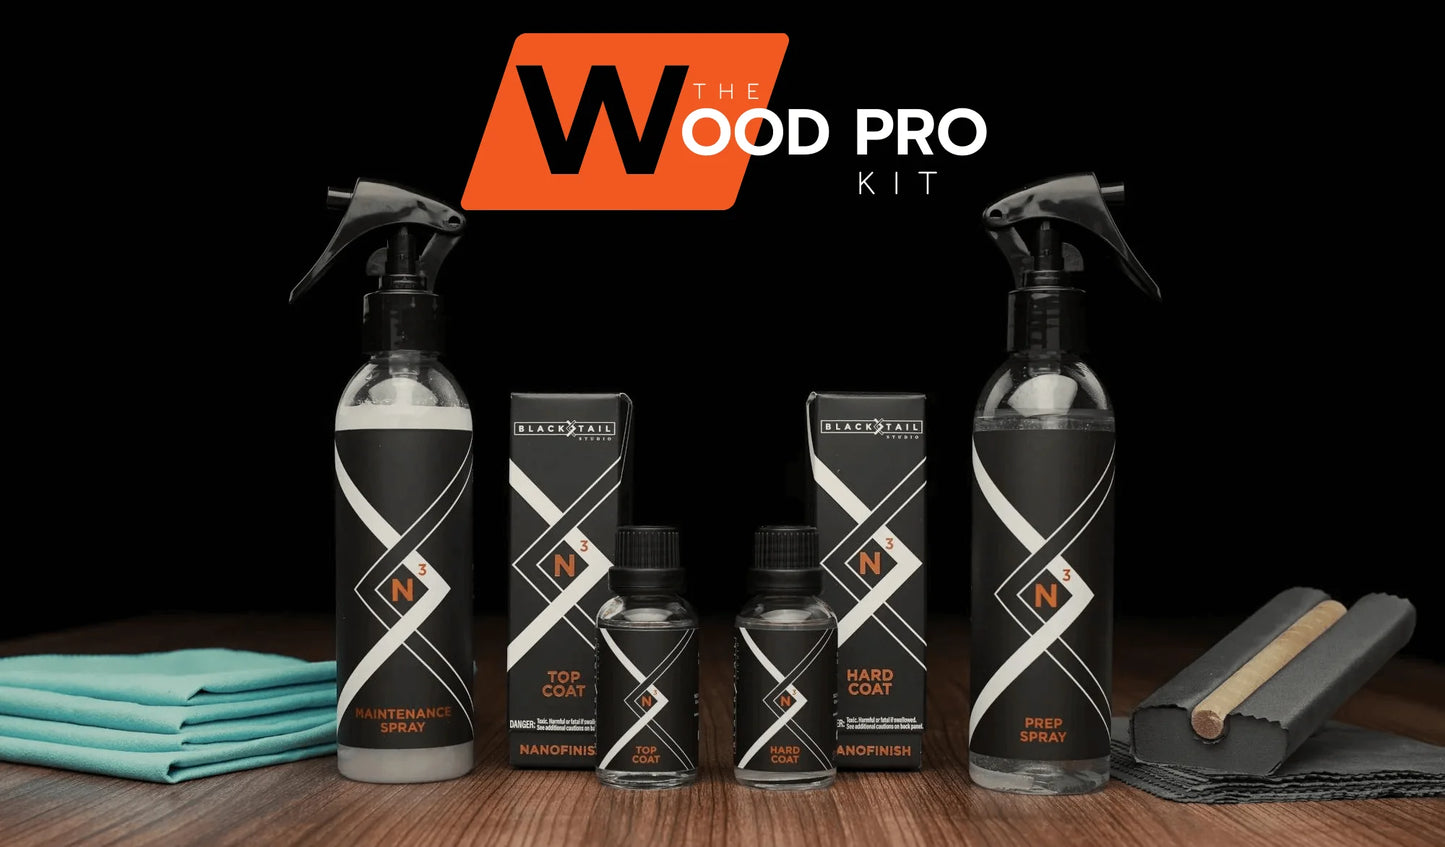 The Wood Pro Kit